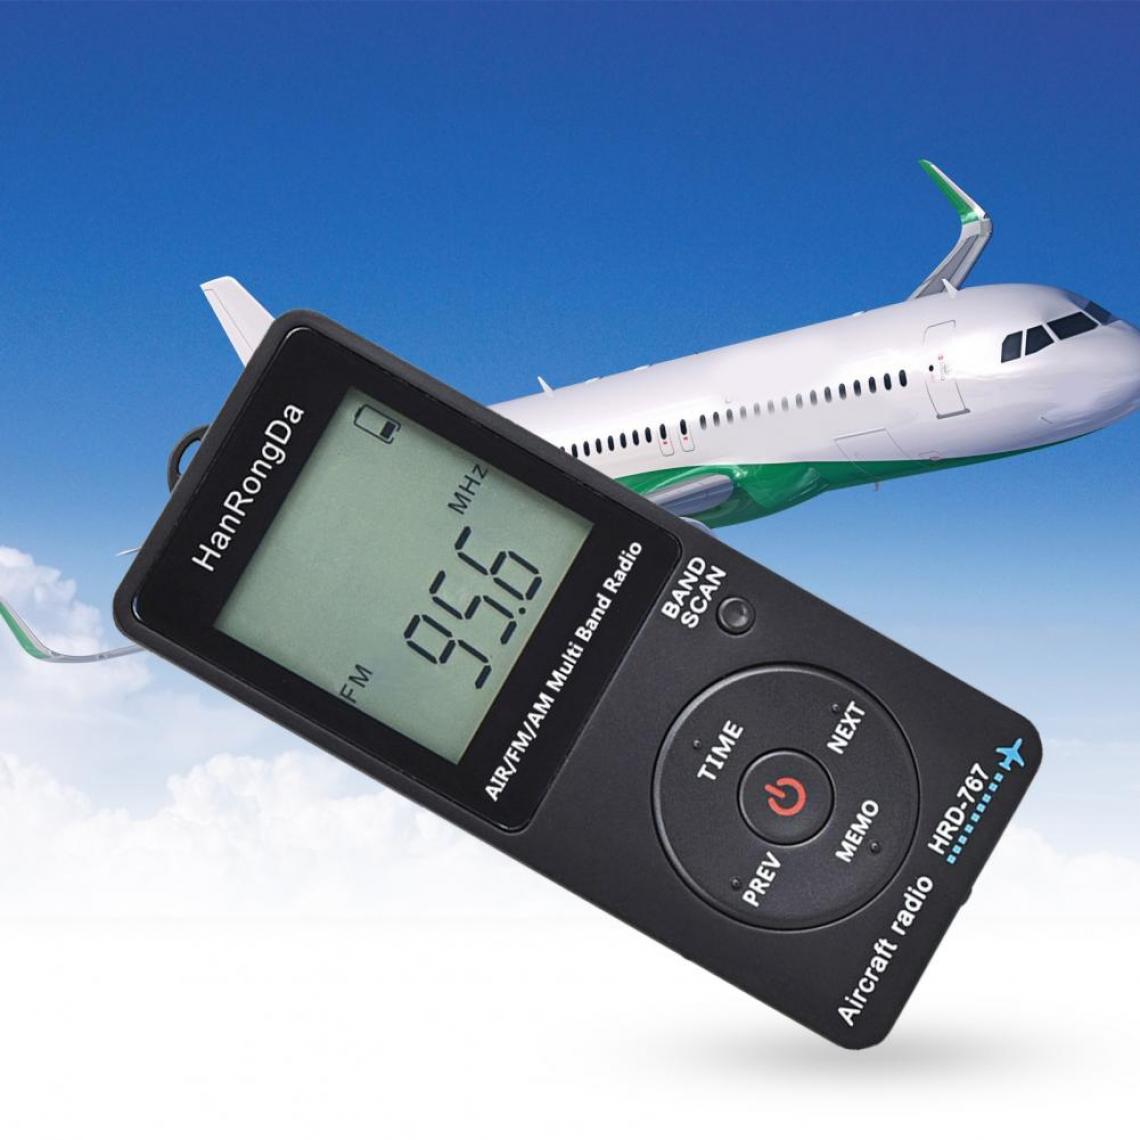 Universal - Mini radio de poche avion avec récepteur radio portable écran LCD bouton de verrouillage FM/AM/radio avec écouteur(Le noir) - Radio